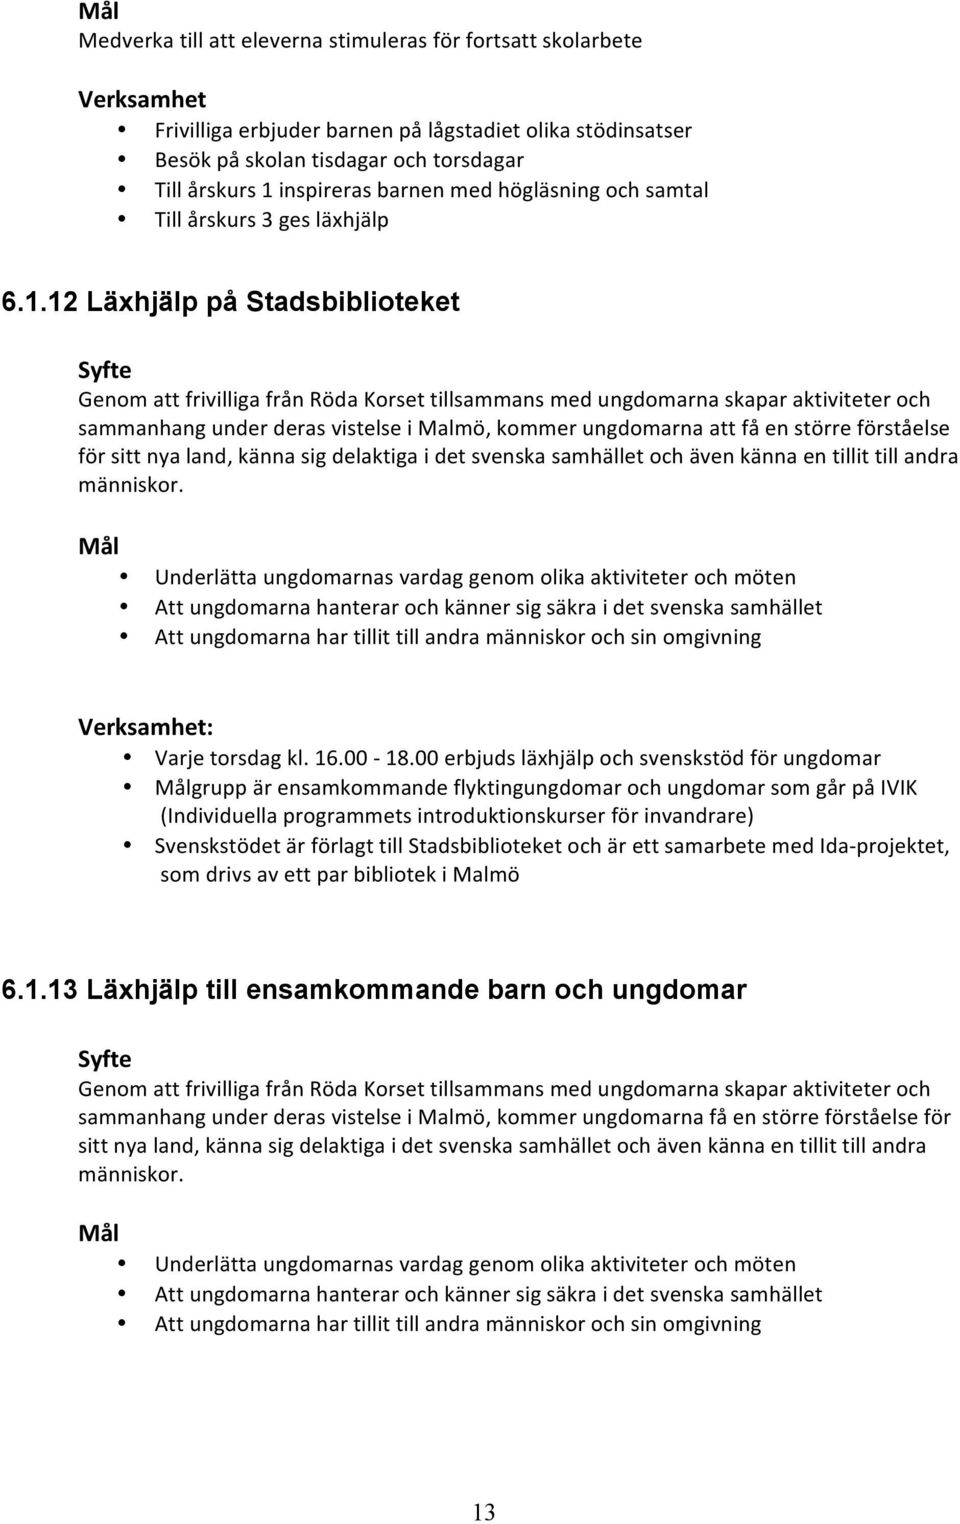 Verksamhetsplan Malmö Storstadskrets - PDF Gratis nedladdning